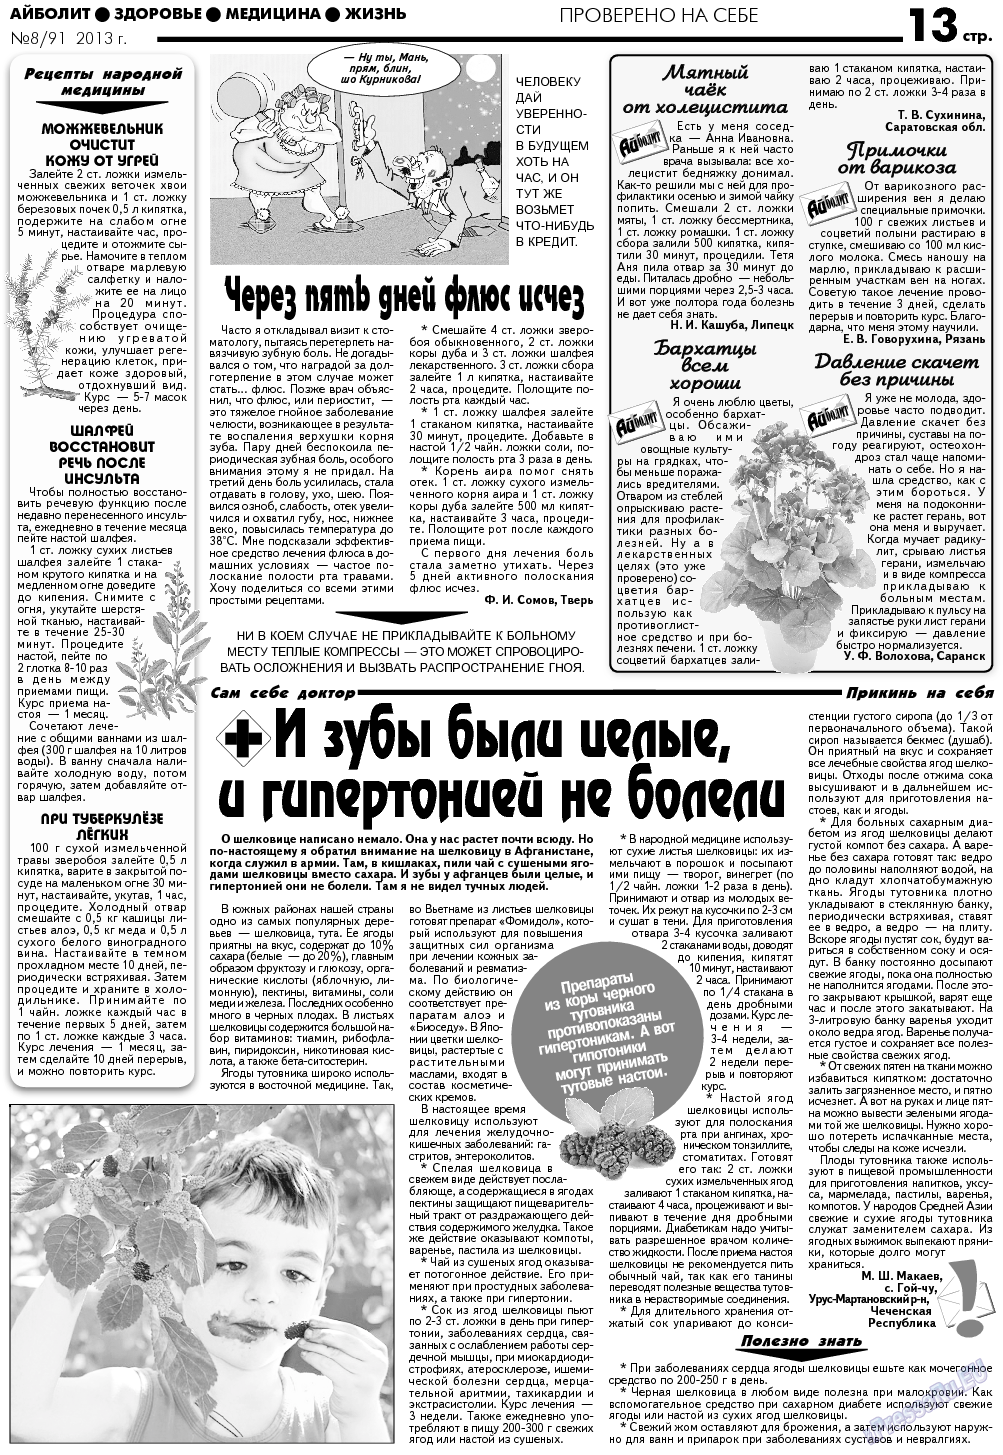 АйБолит, газета. 2013 №8 стр.13